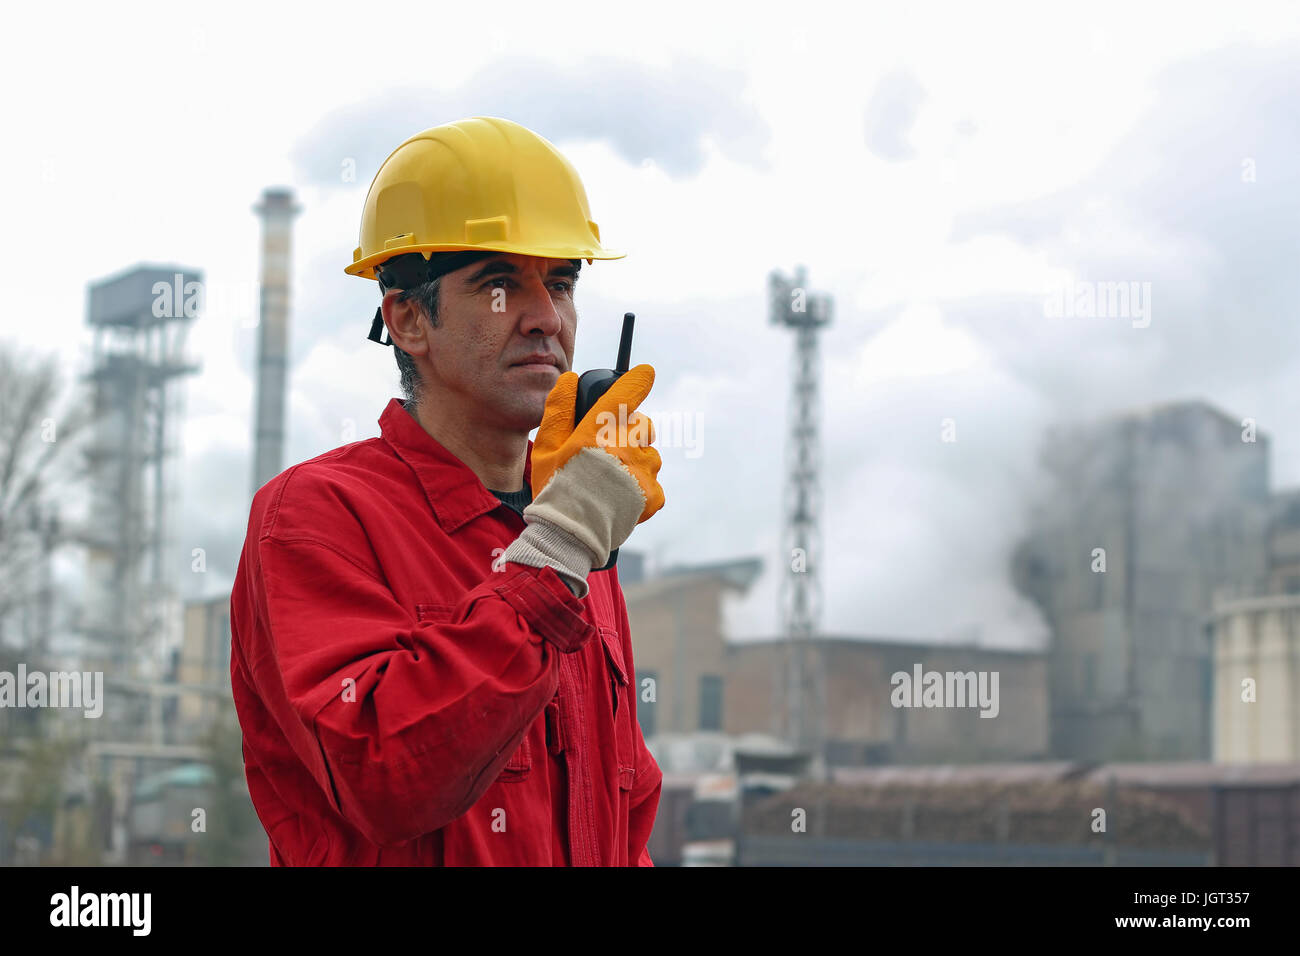 Industriearbeiter in Zuckerfabrik. Ein Portrait eines Arbeitnehmers im roten Overall und gelben Helm. Stockfoto